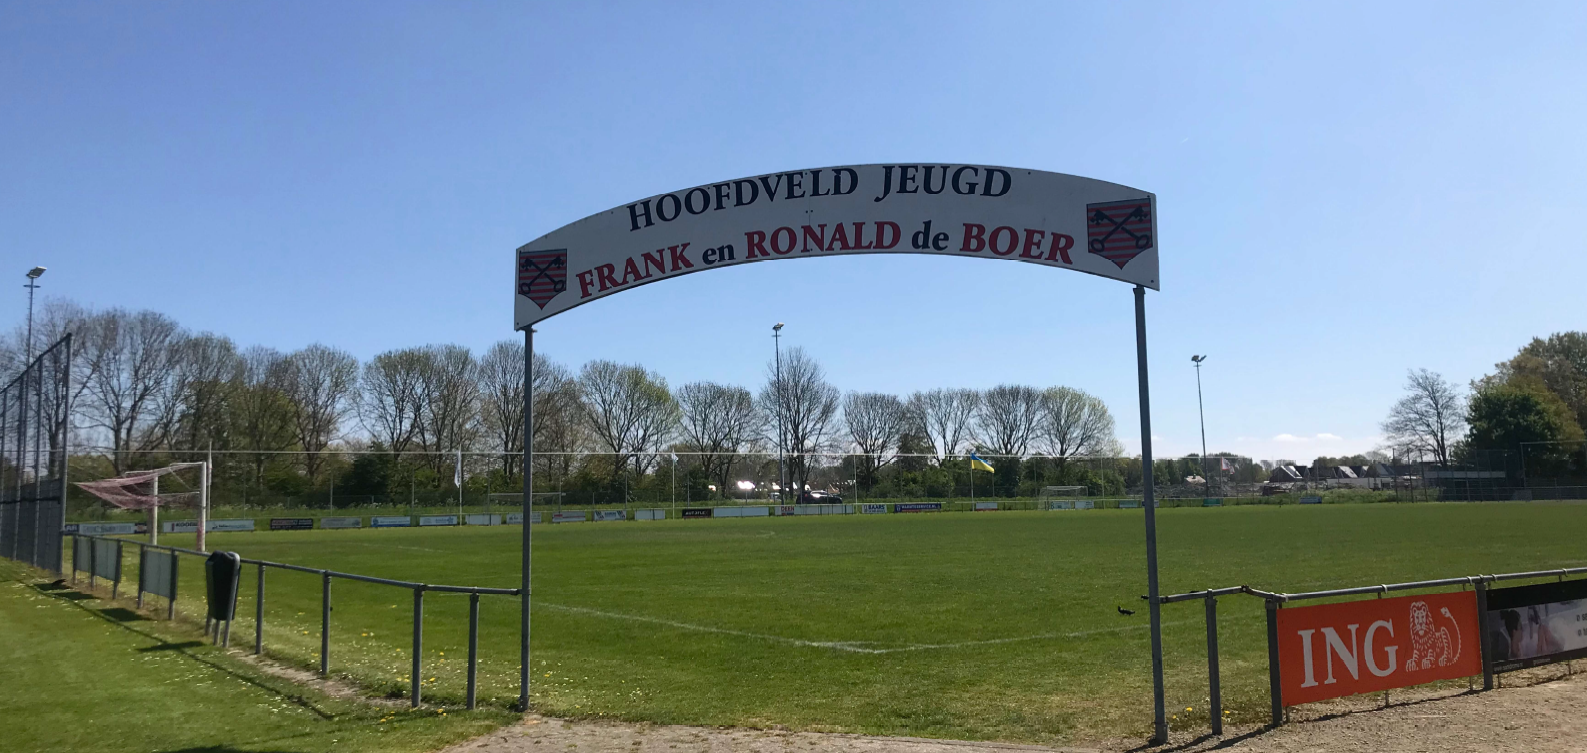 Hoofdveld jeugd van Zouaven heet Frank en Ronald de Boer